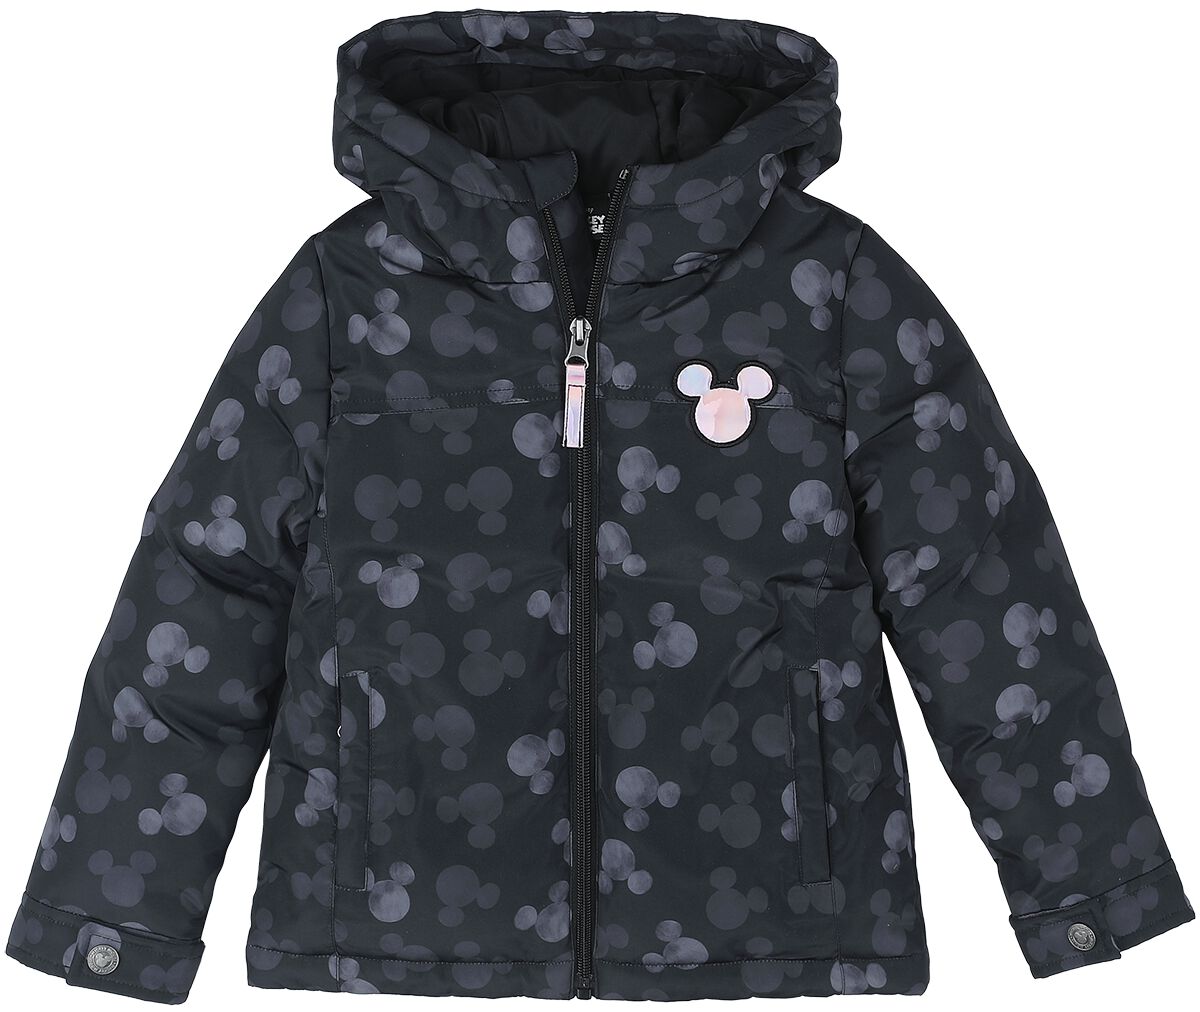 Mickey Mouse - Disney Jacke für Kleinkinder - Allover - für Mädchen - schwarz  - EMP exklusives Merchandise!